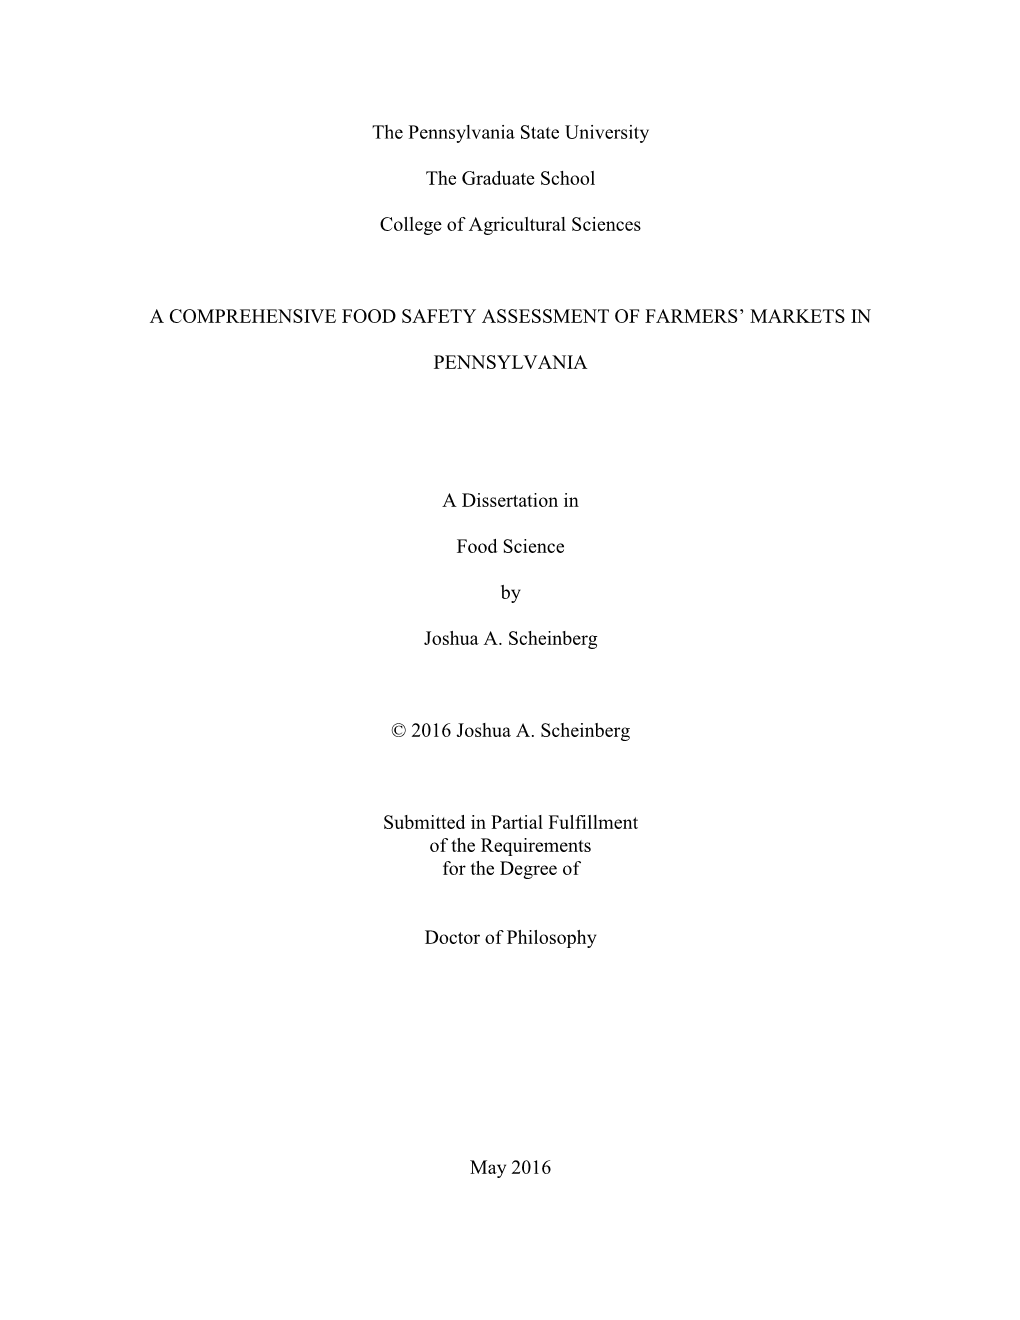 Open Scheinberg Dissertation 2.8.15.Pdf